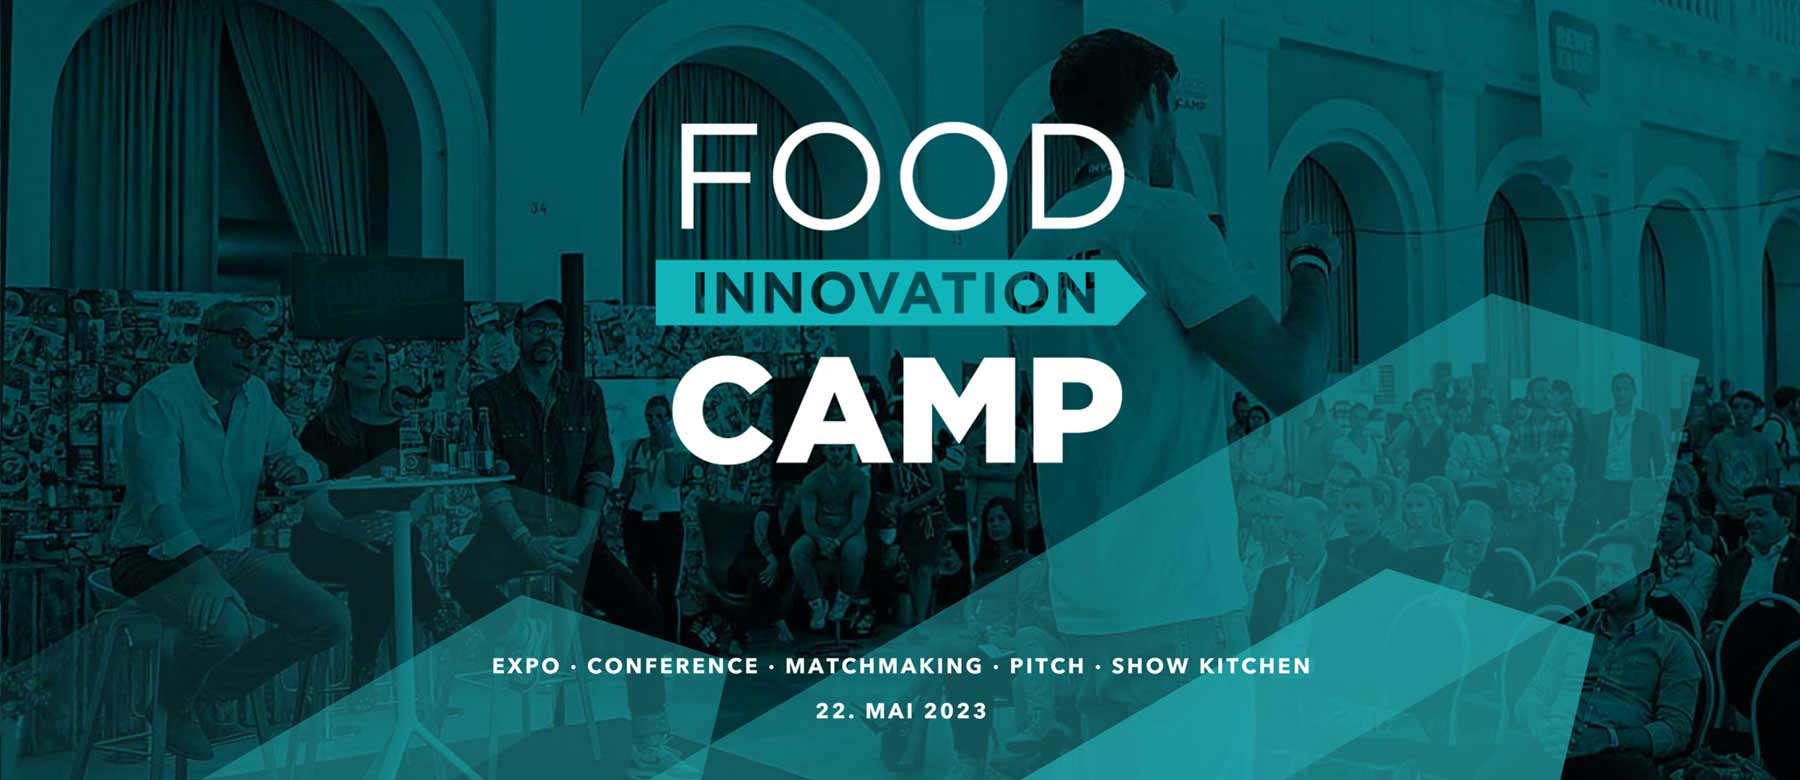 Food Innovation Camp 2023